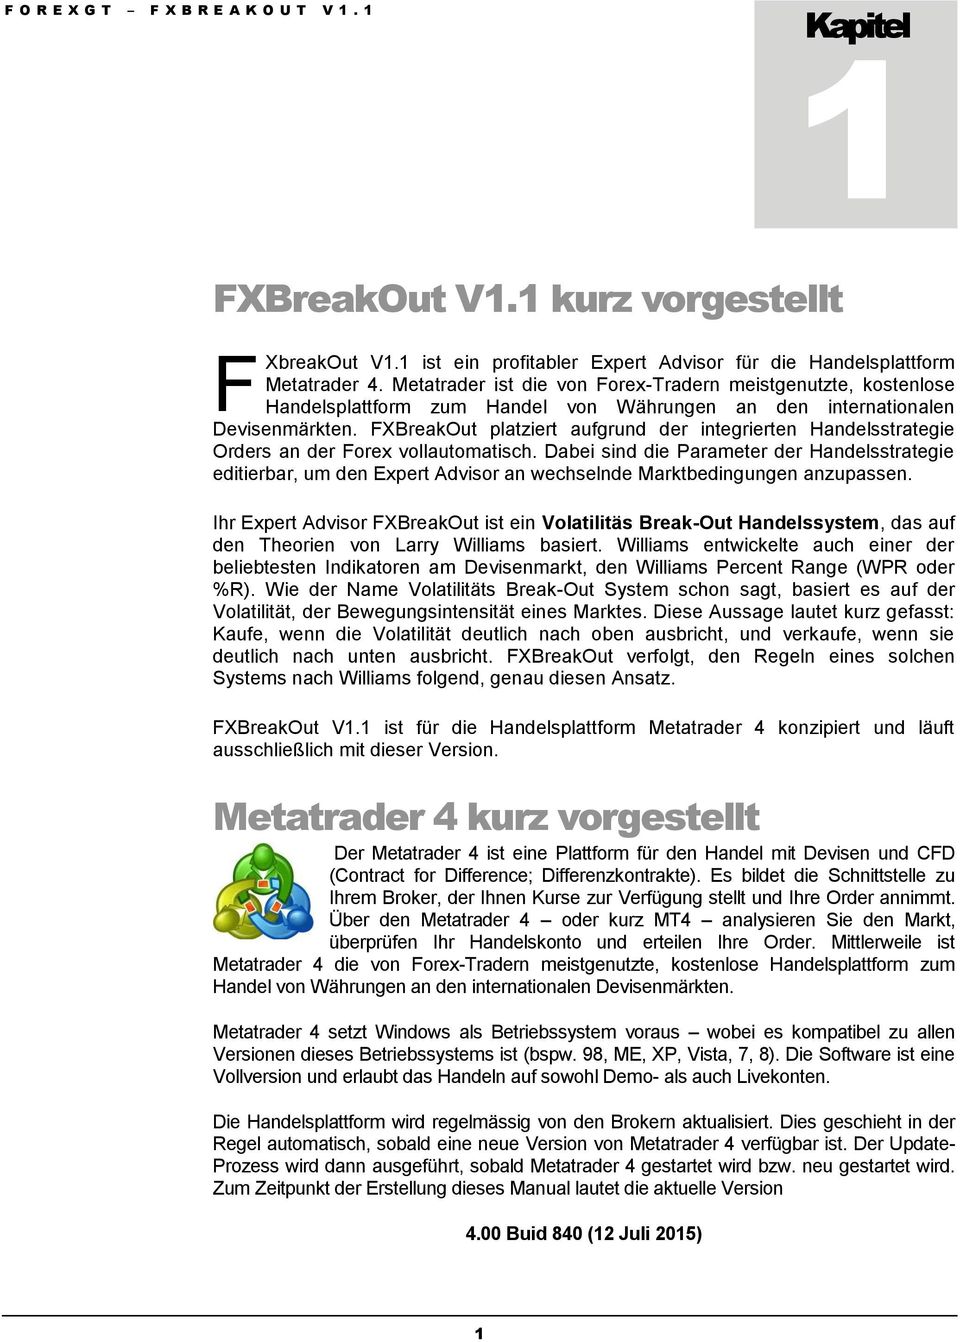 FXBreakOut platziert aufgrund der integrierten Handelsstrategie Orders an der Forex vollautomatisch.